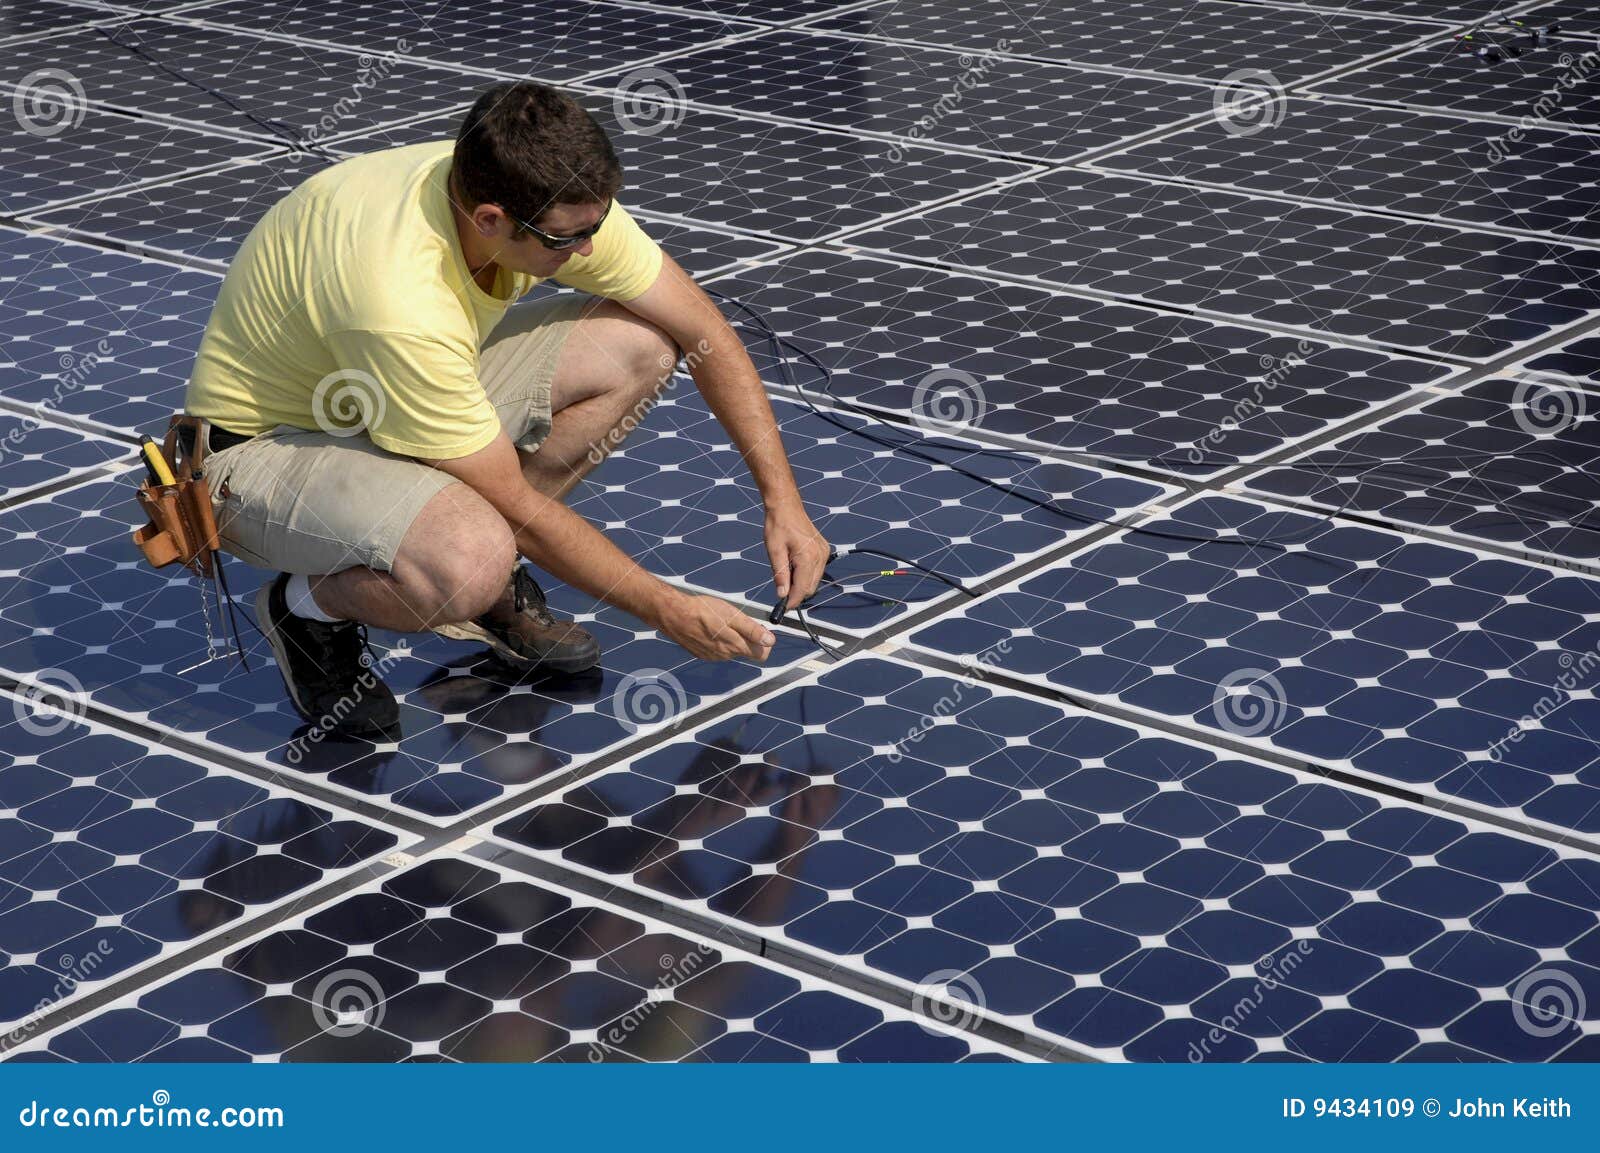 solar panel install